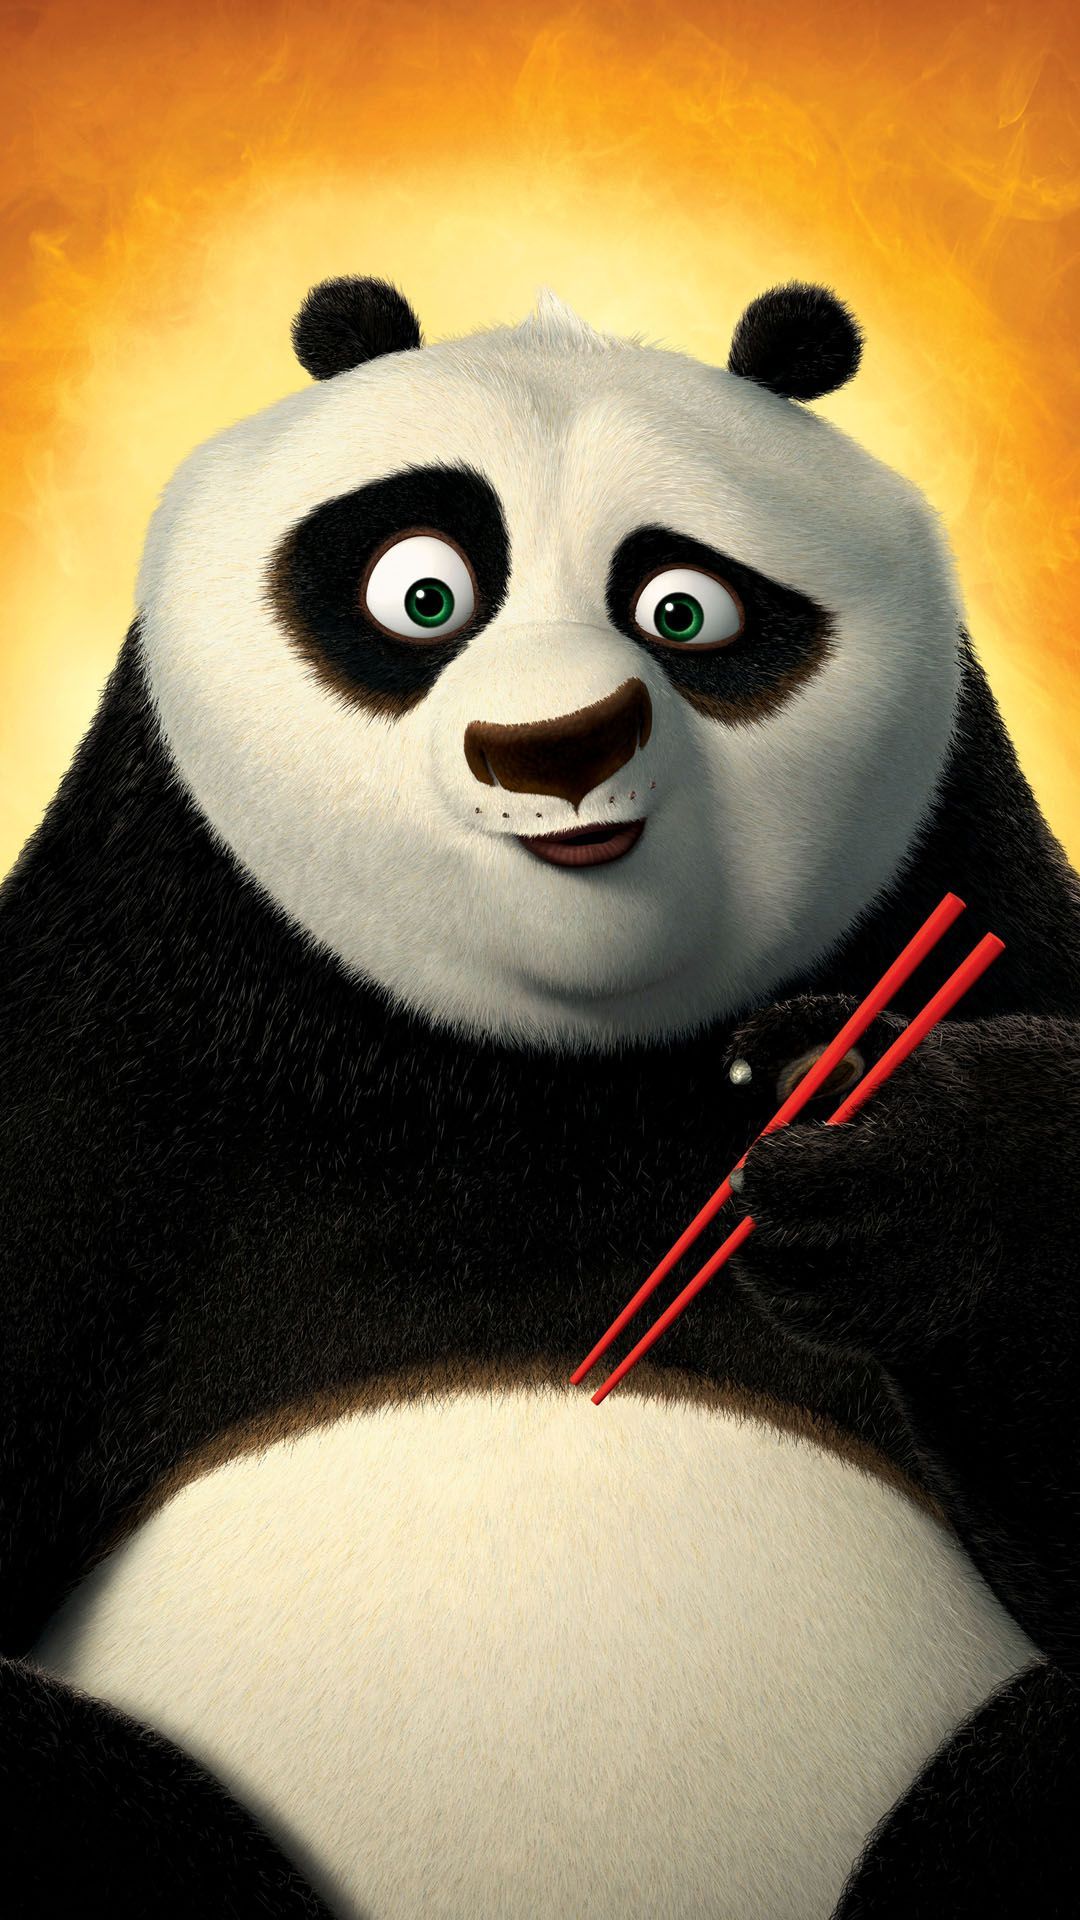 Phone Wallpaper HD. Kung fu panda, Panda wallpaper, Cartoon wallpaper